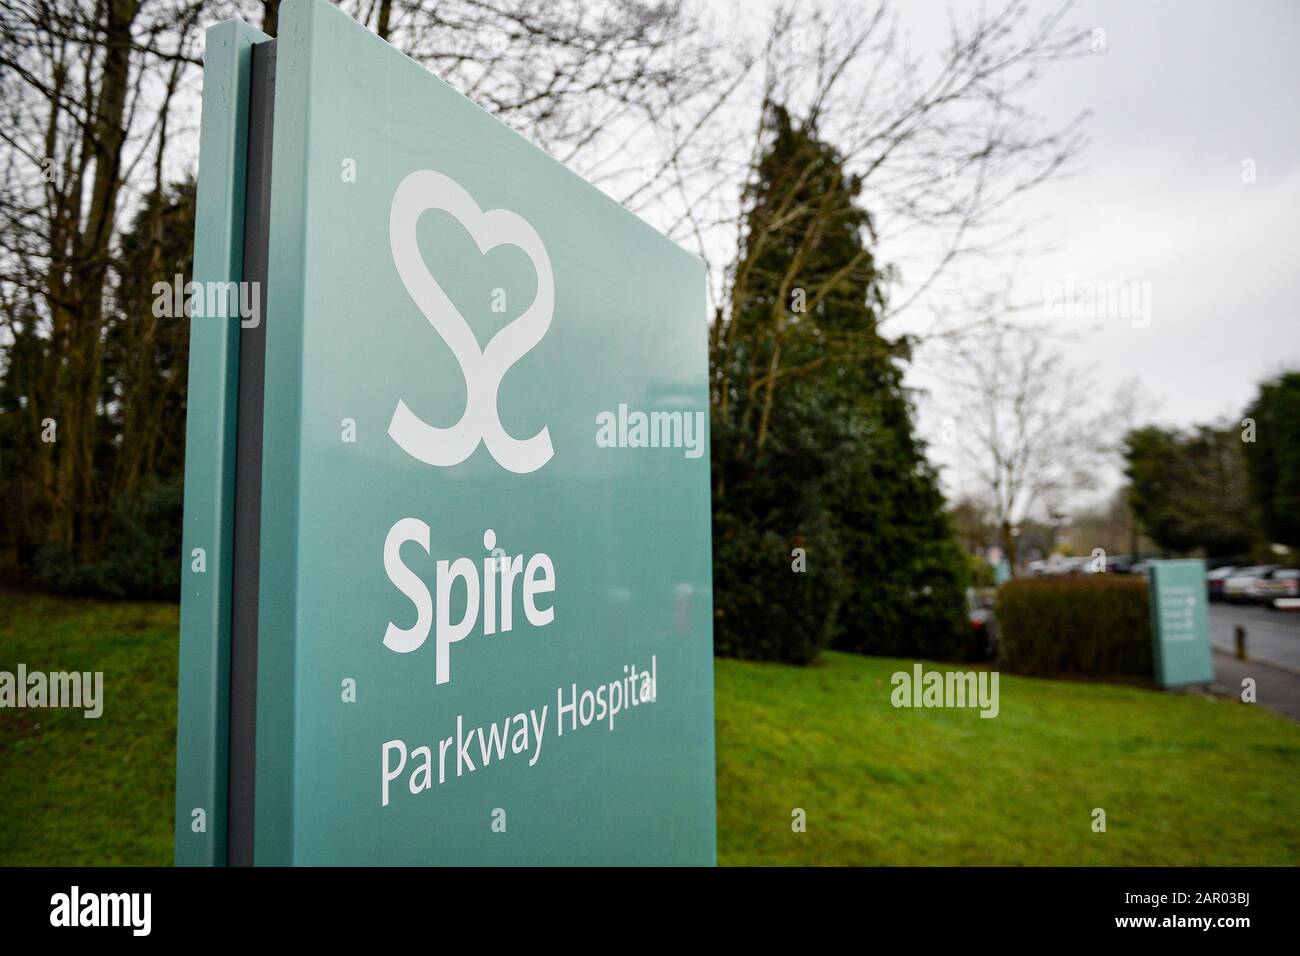 Spire Parkway Hospital in Solihull, West Midlands, wo der orthopädische Chirurg Habib Rahman unnötige oder unangemessene Schulteroperationen durchgeführt haben soll. Stockfoto